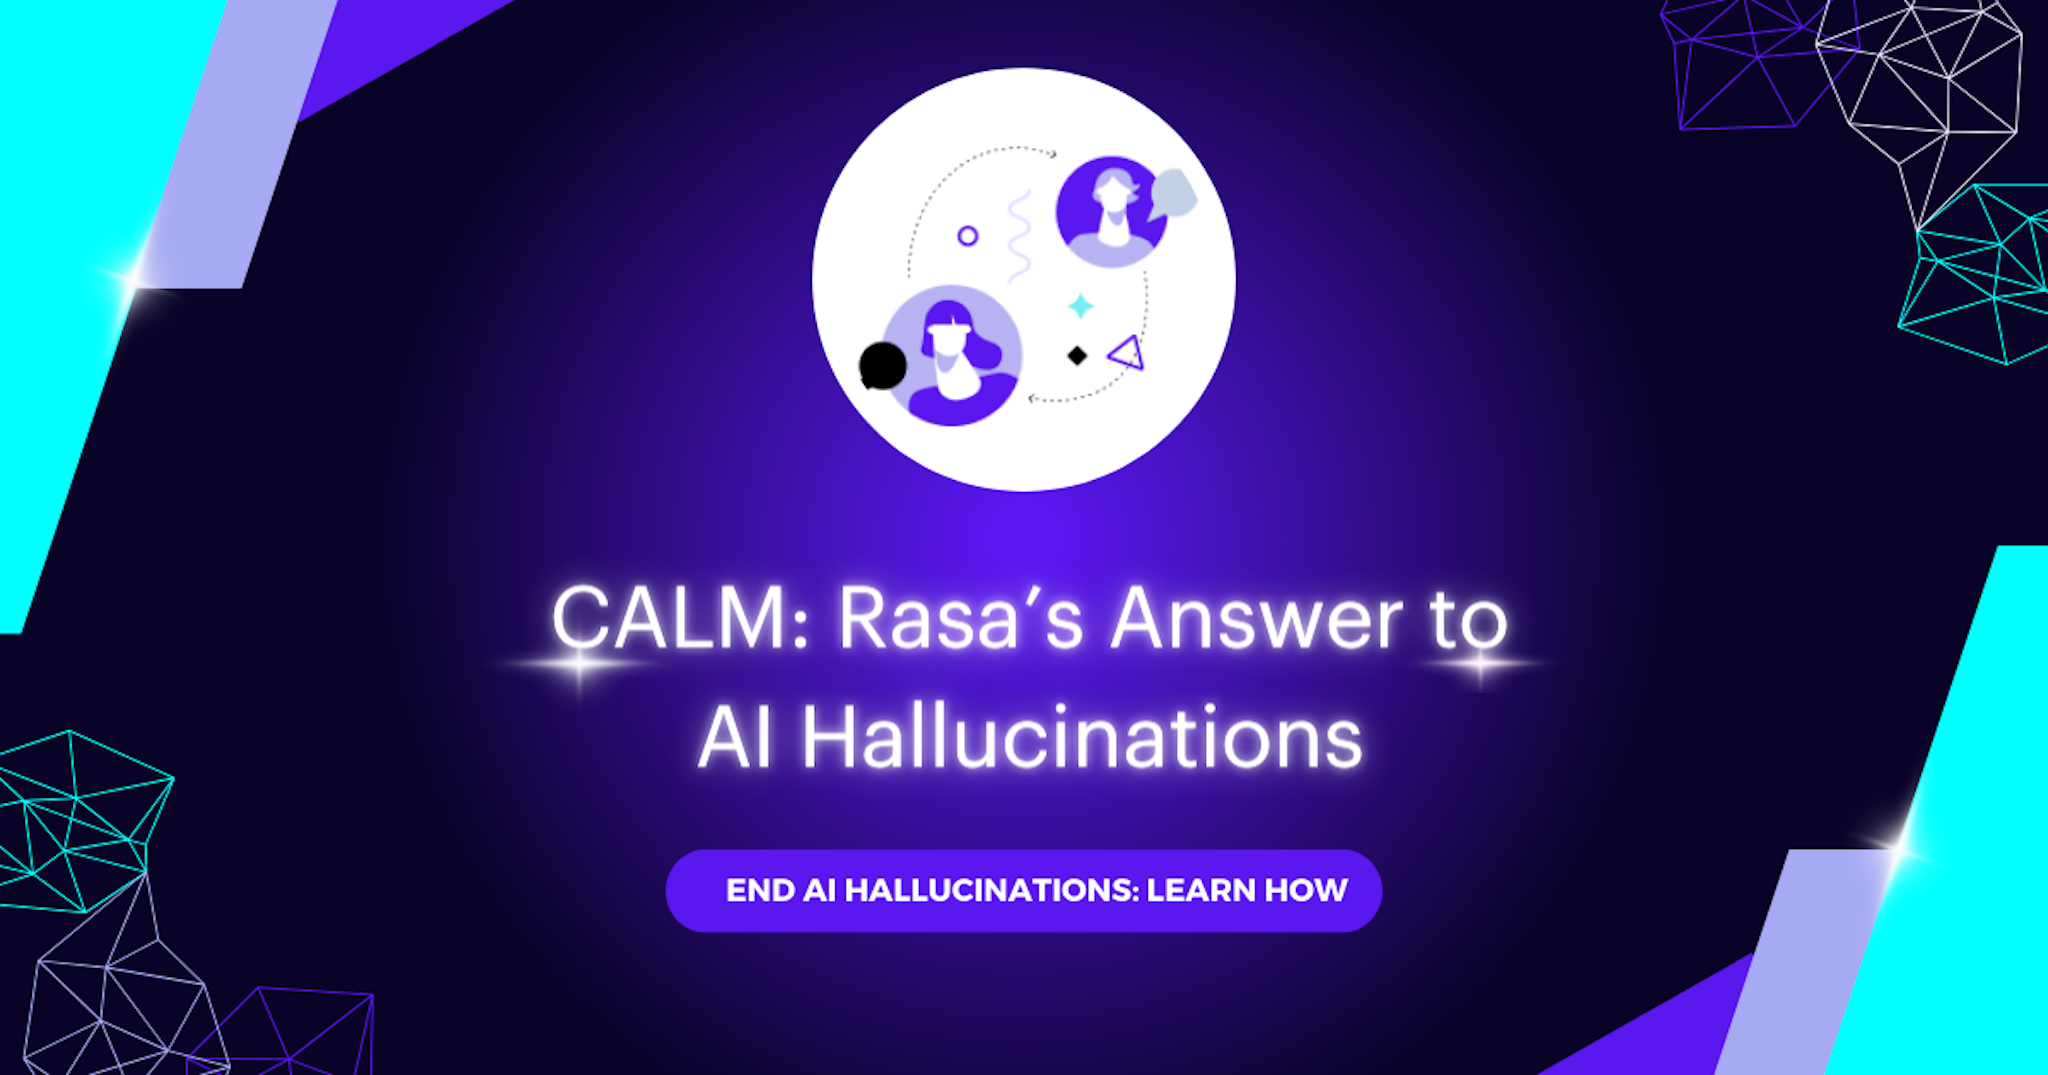 CALM: Rasa's Answer to AI Hallucinations